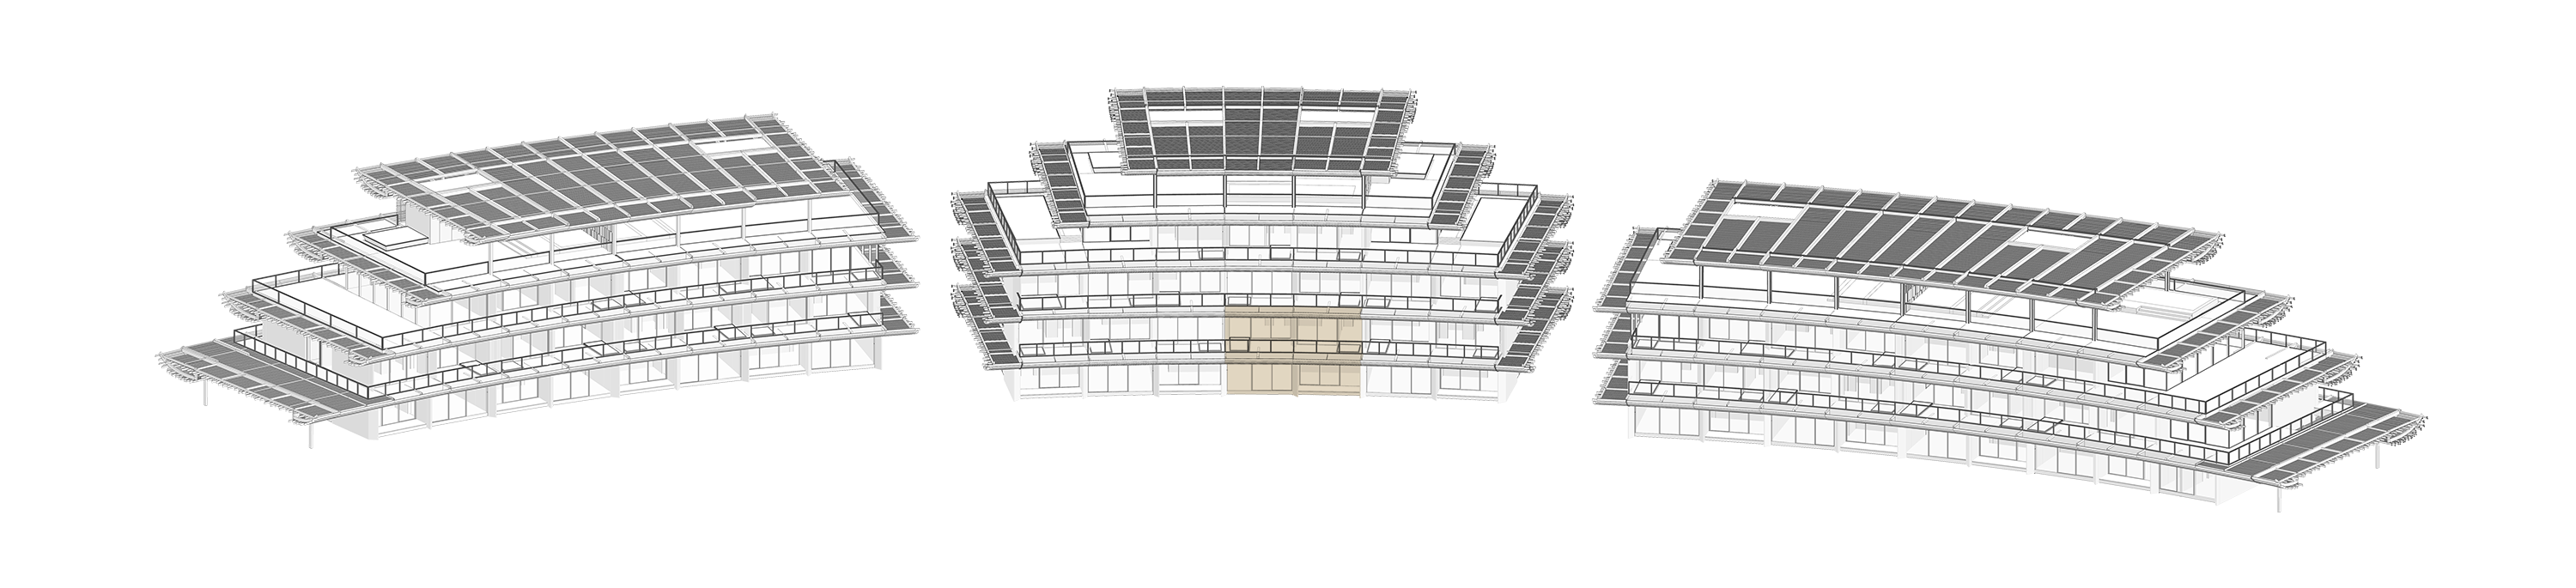 Marina Residences - Kengo Kuma - Build Plan - Maisonettes - APB2.